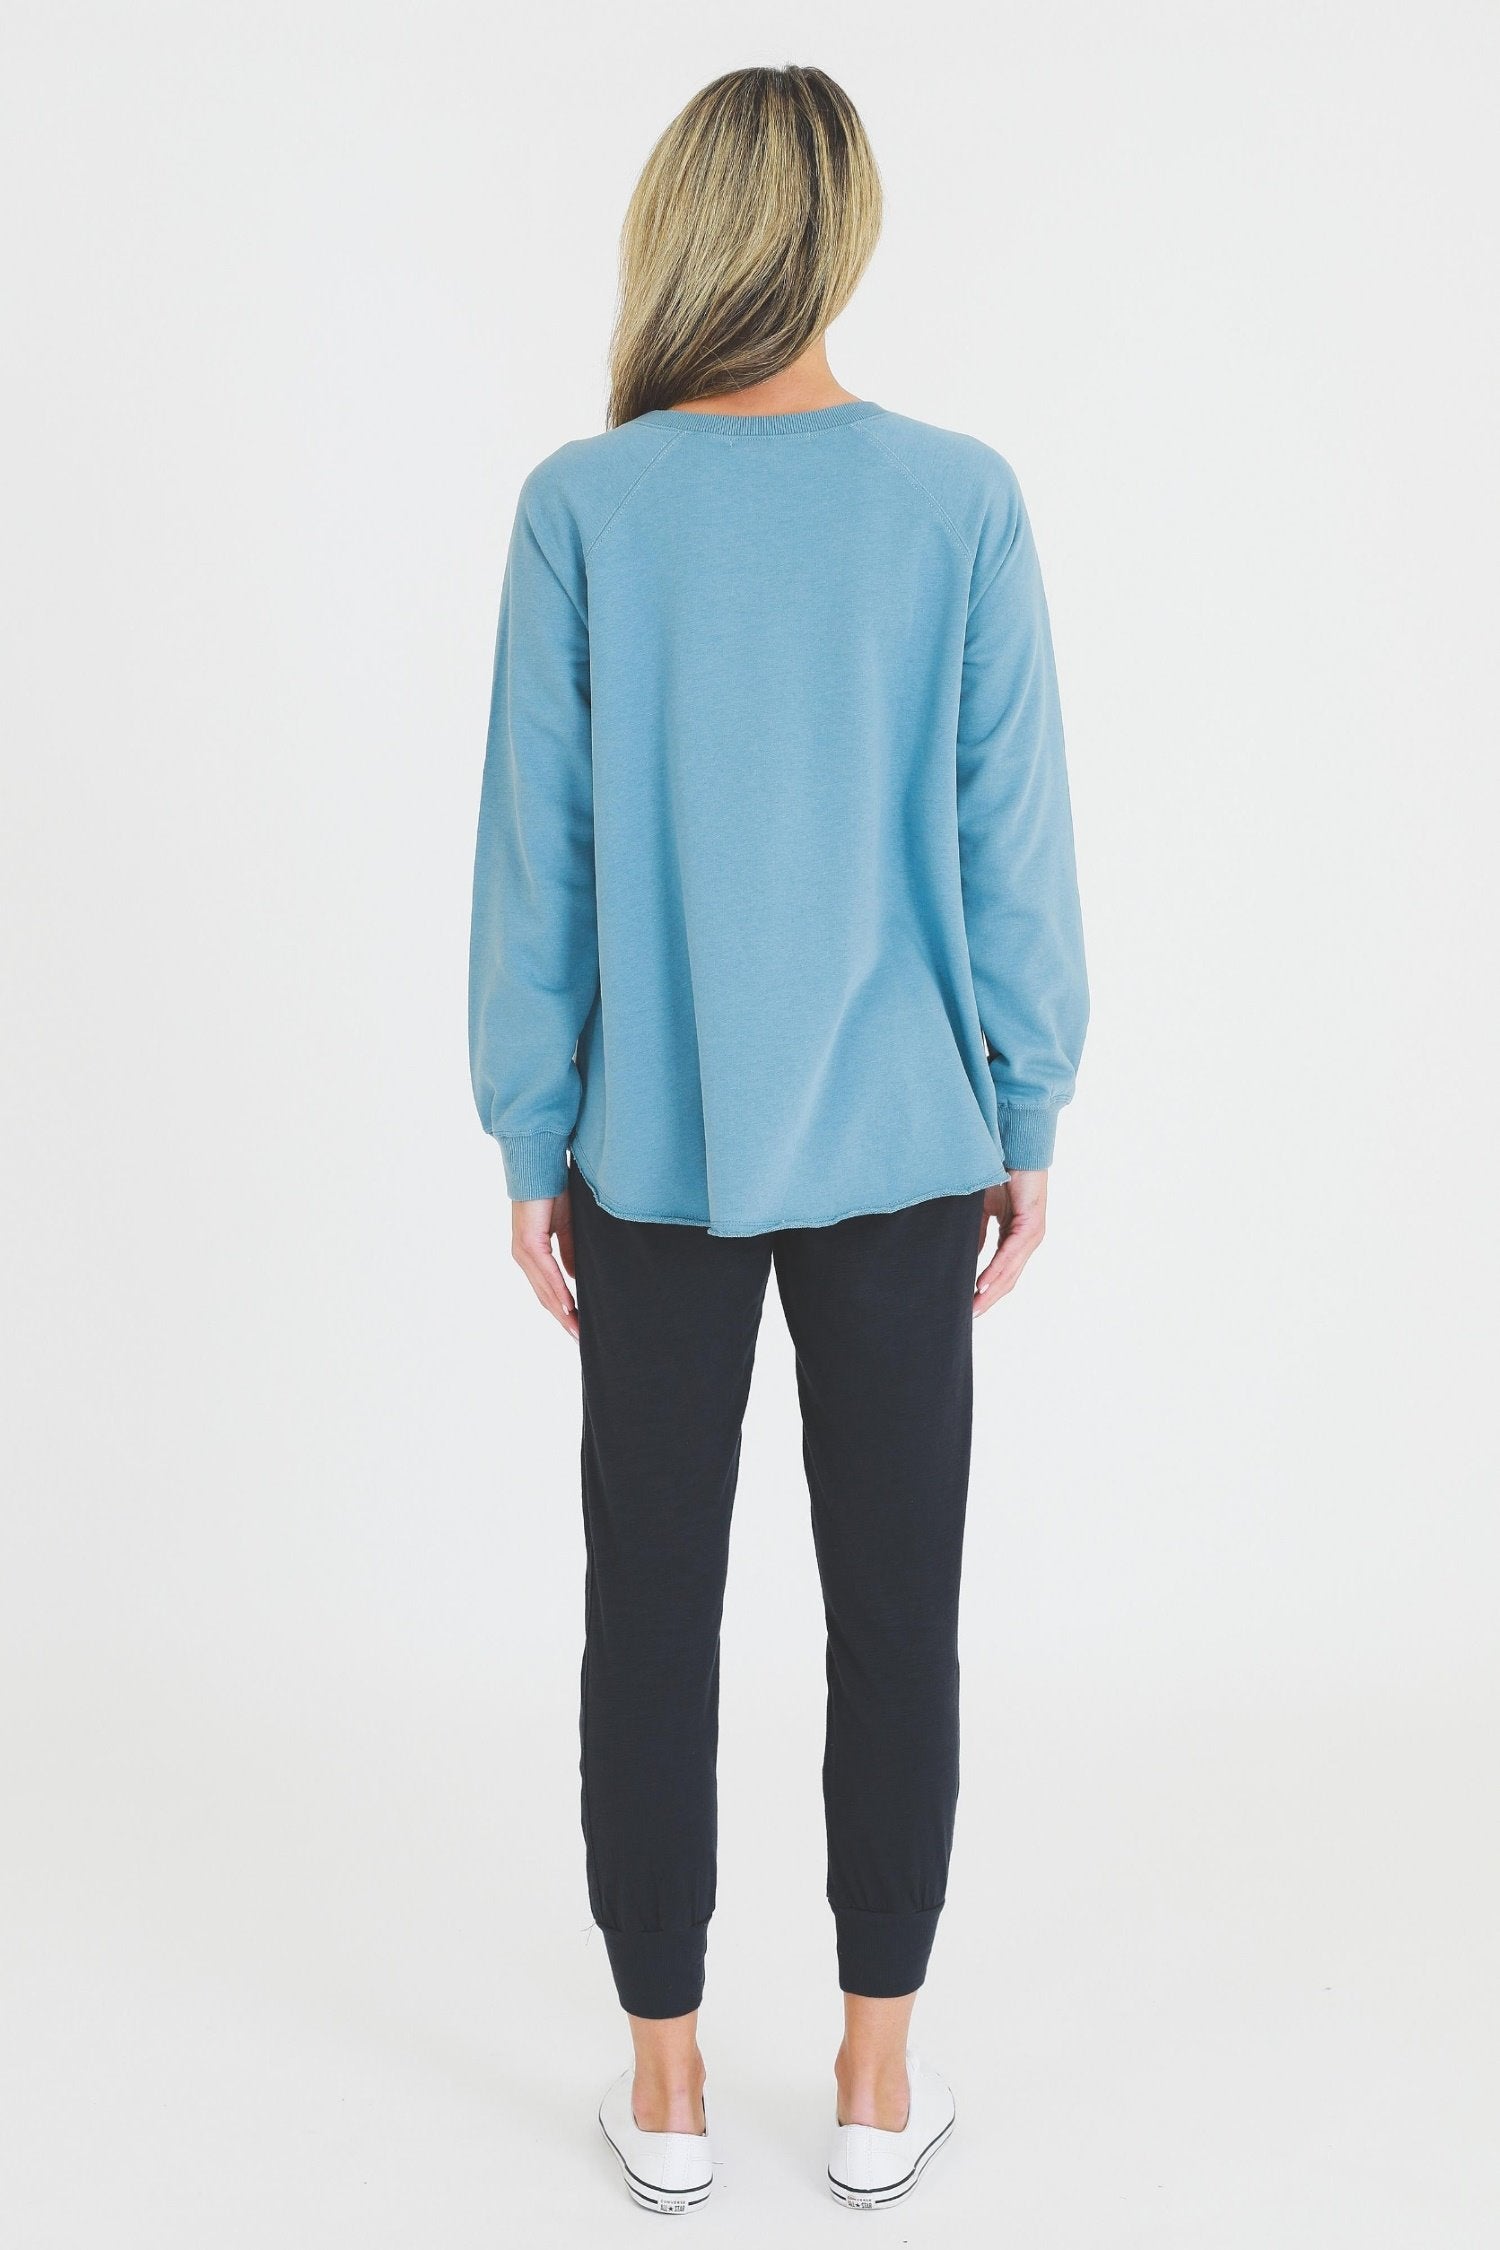 Essentials Sweatshirt #color_oceana blue